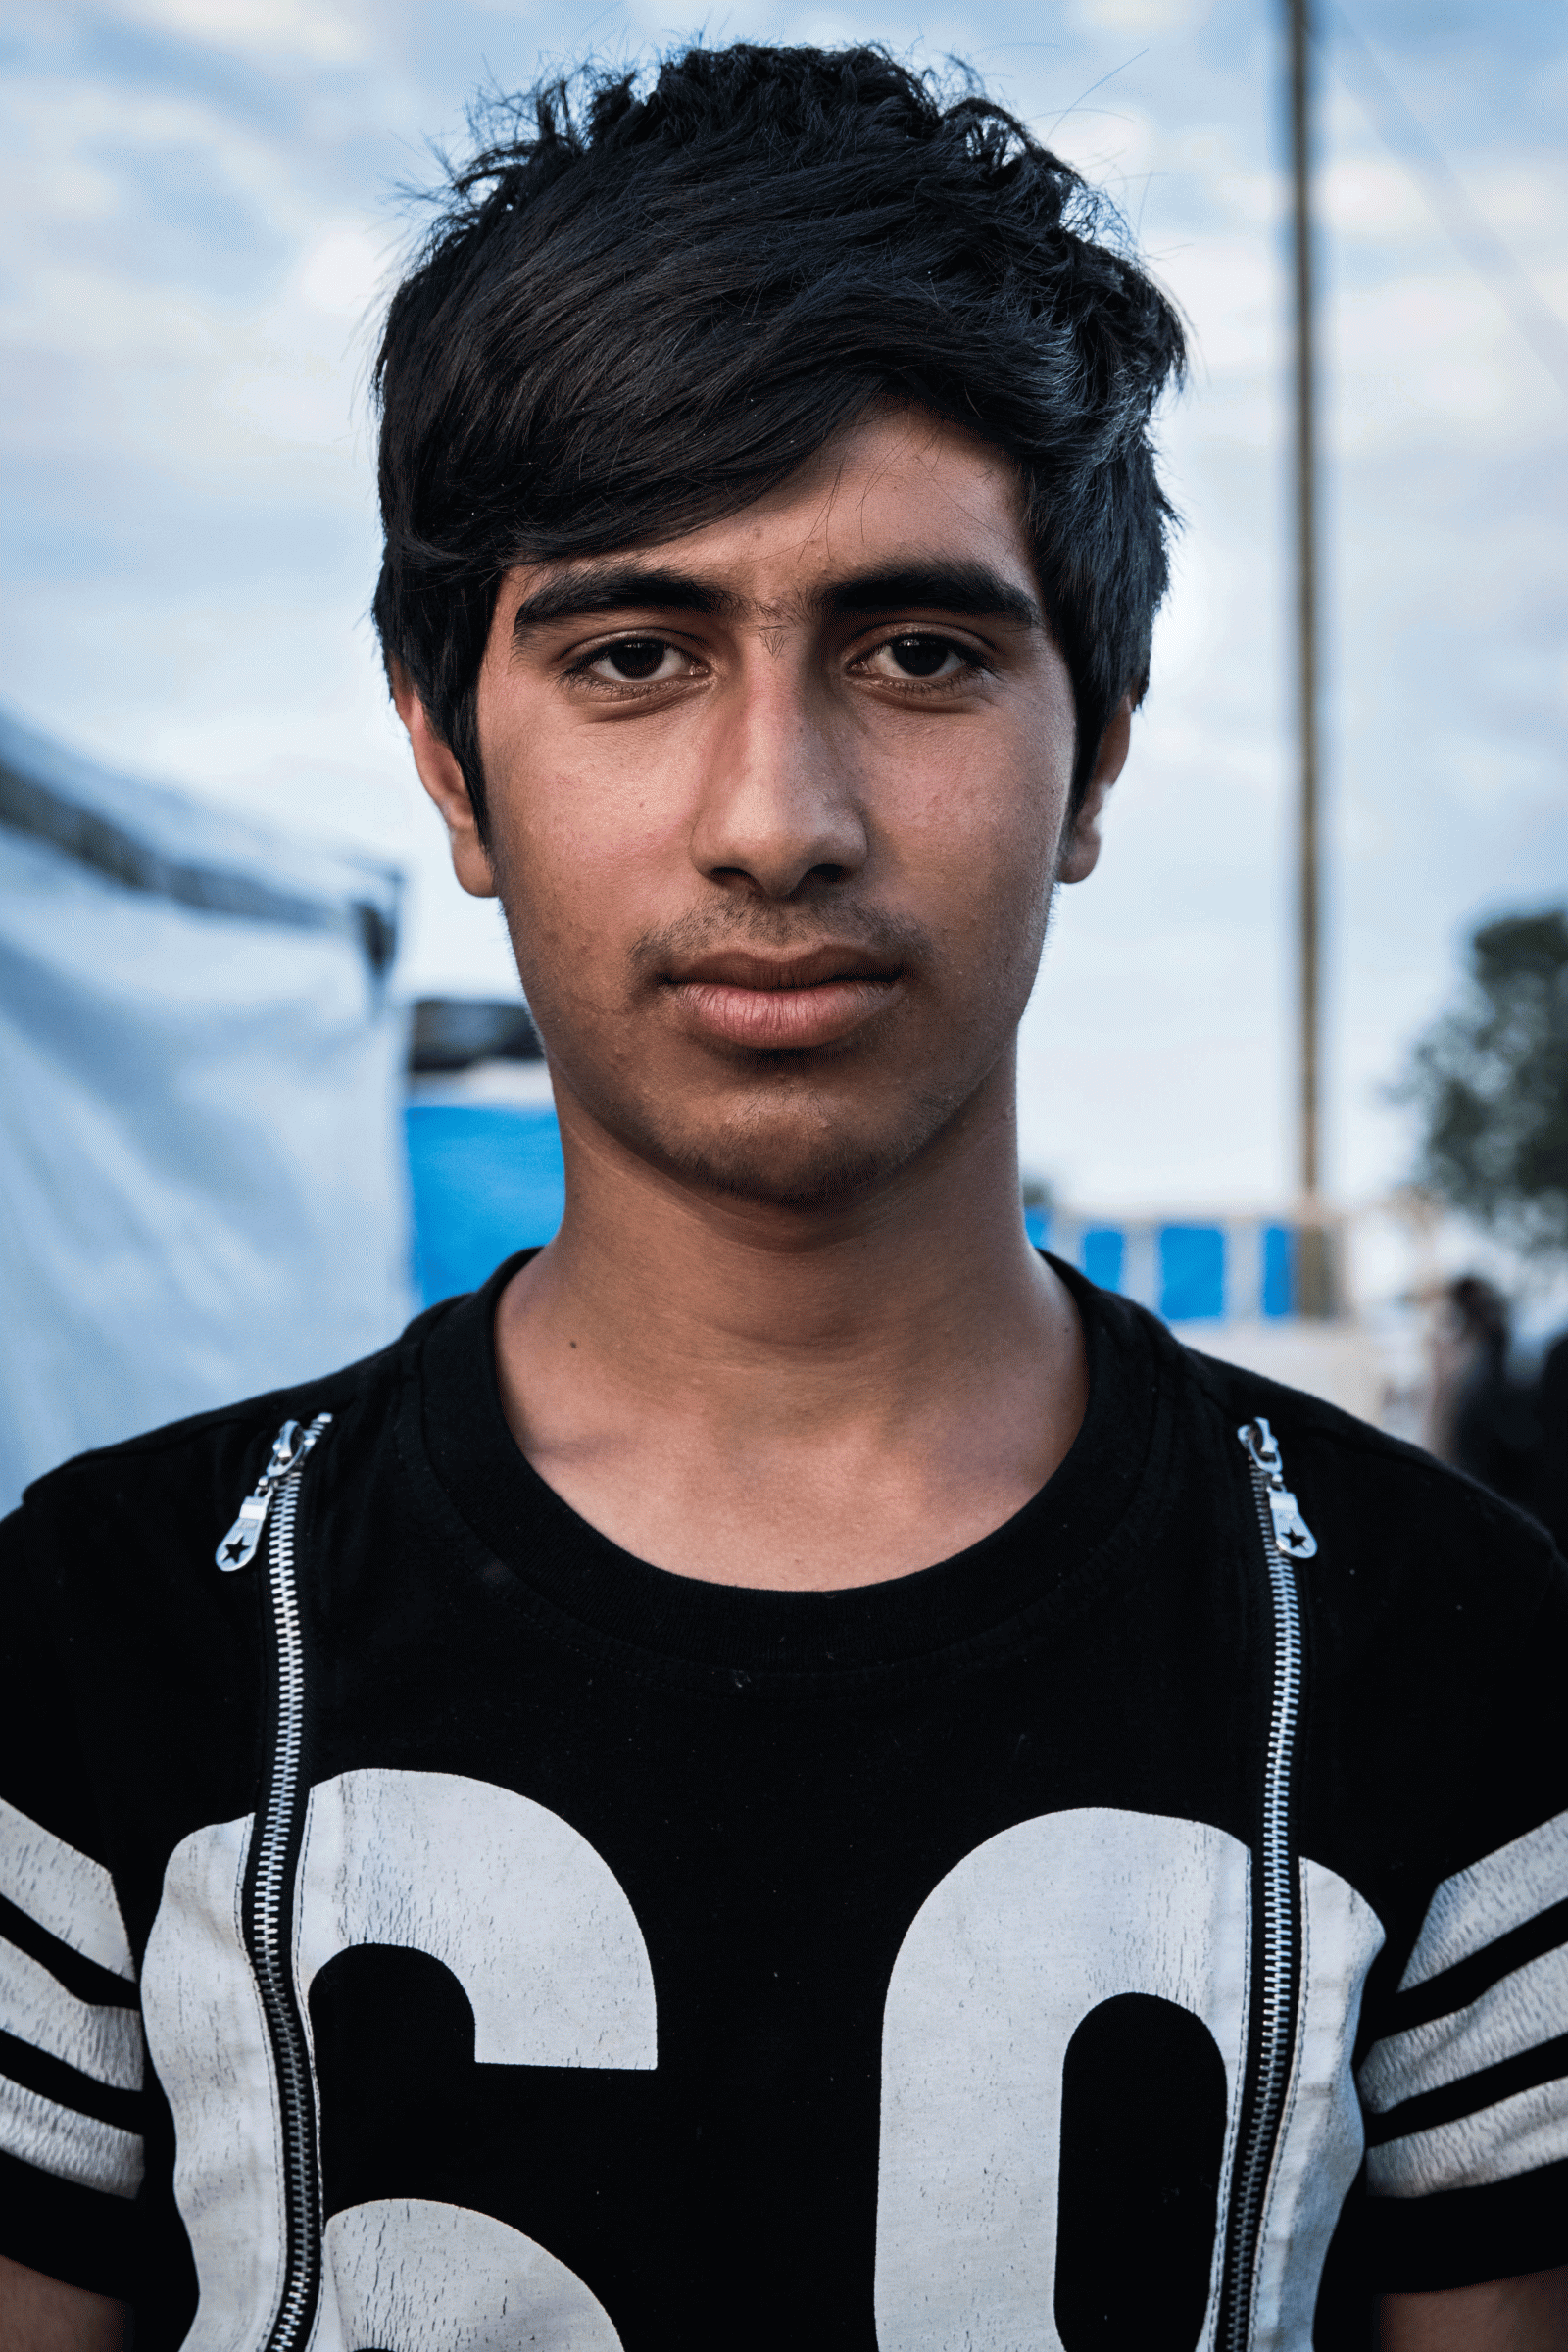 Mohammed, 15 (Afghanistan)